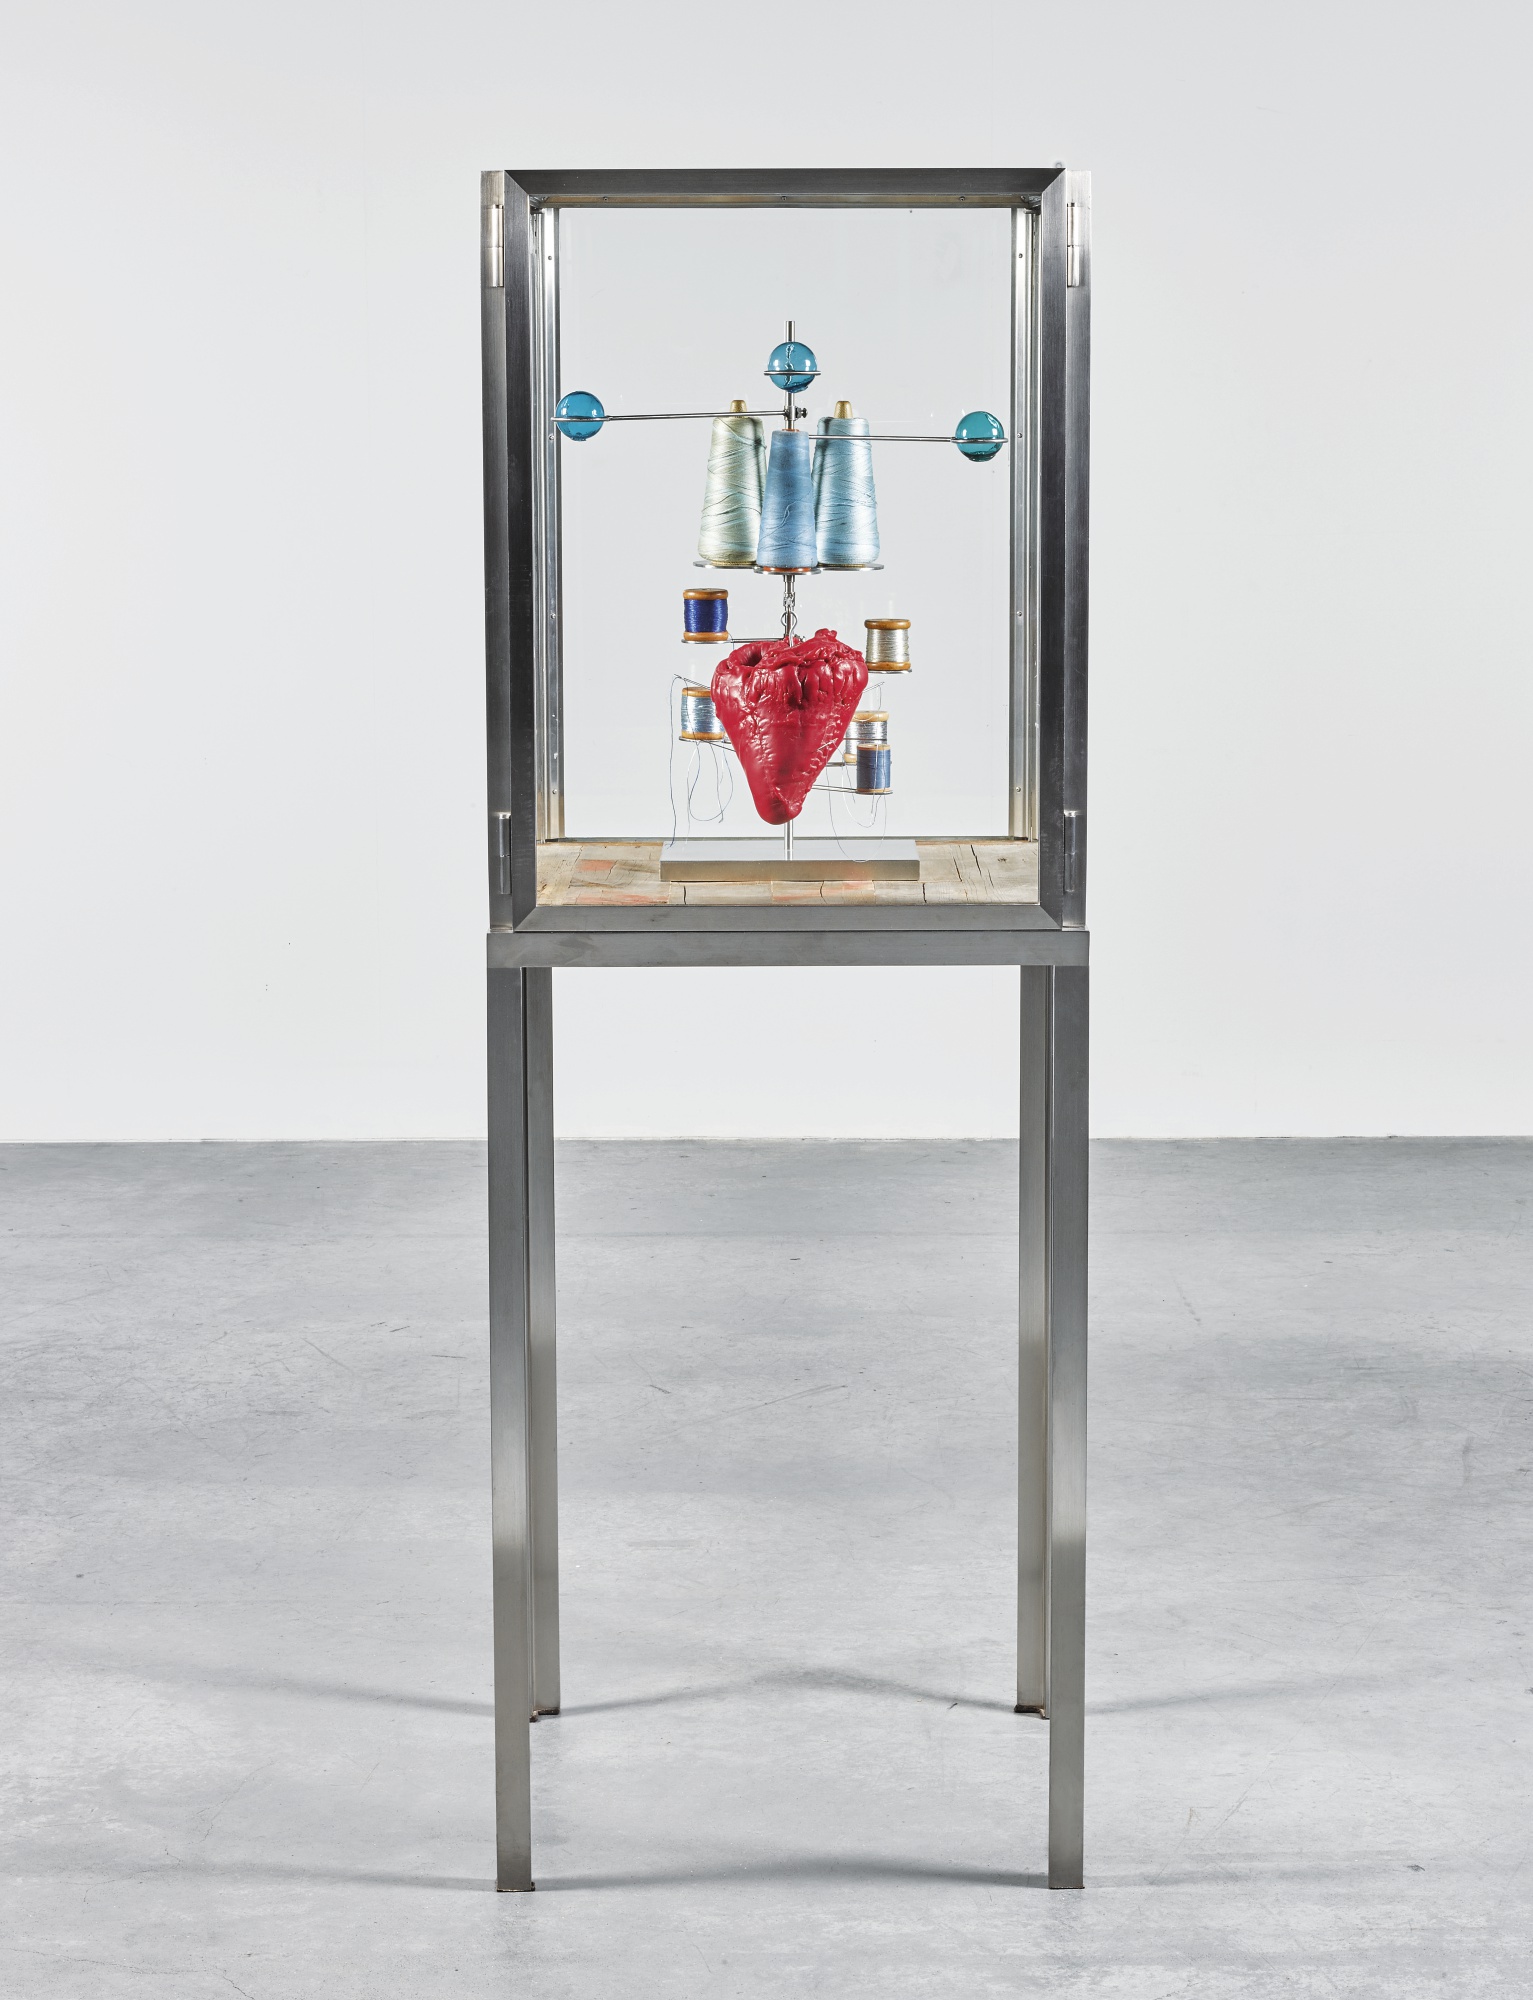 女艺术家路易丝•布尔乔亚的装置艺术作品竞拍价达87万余英镑